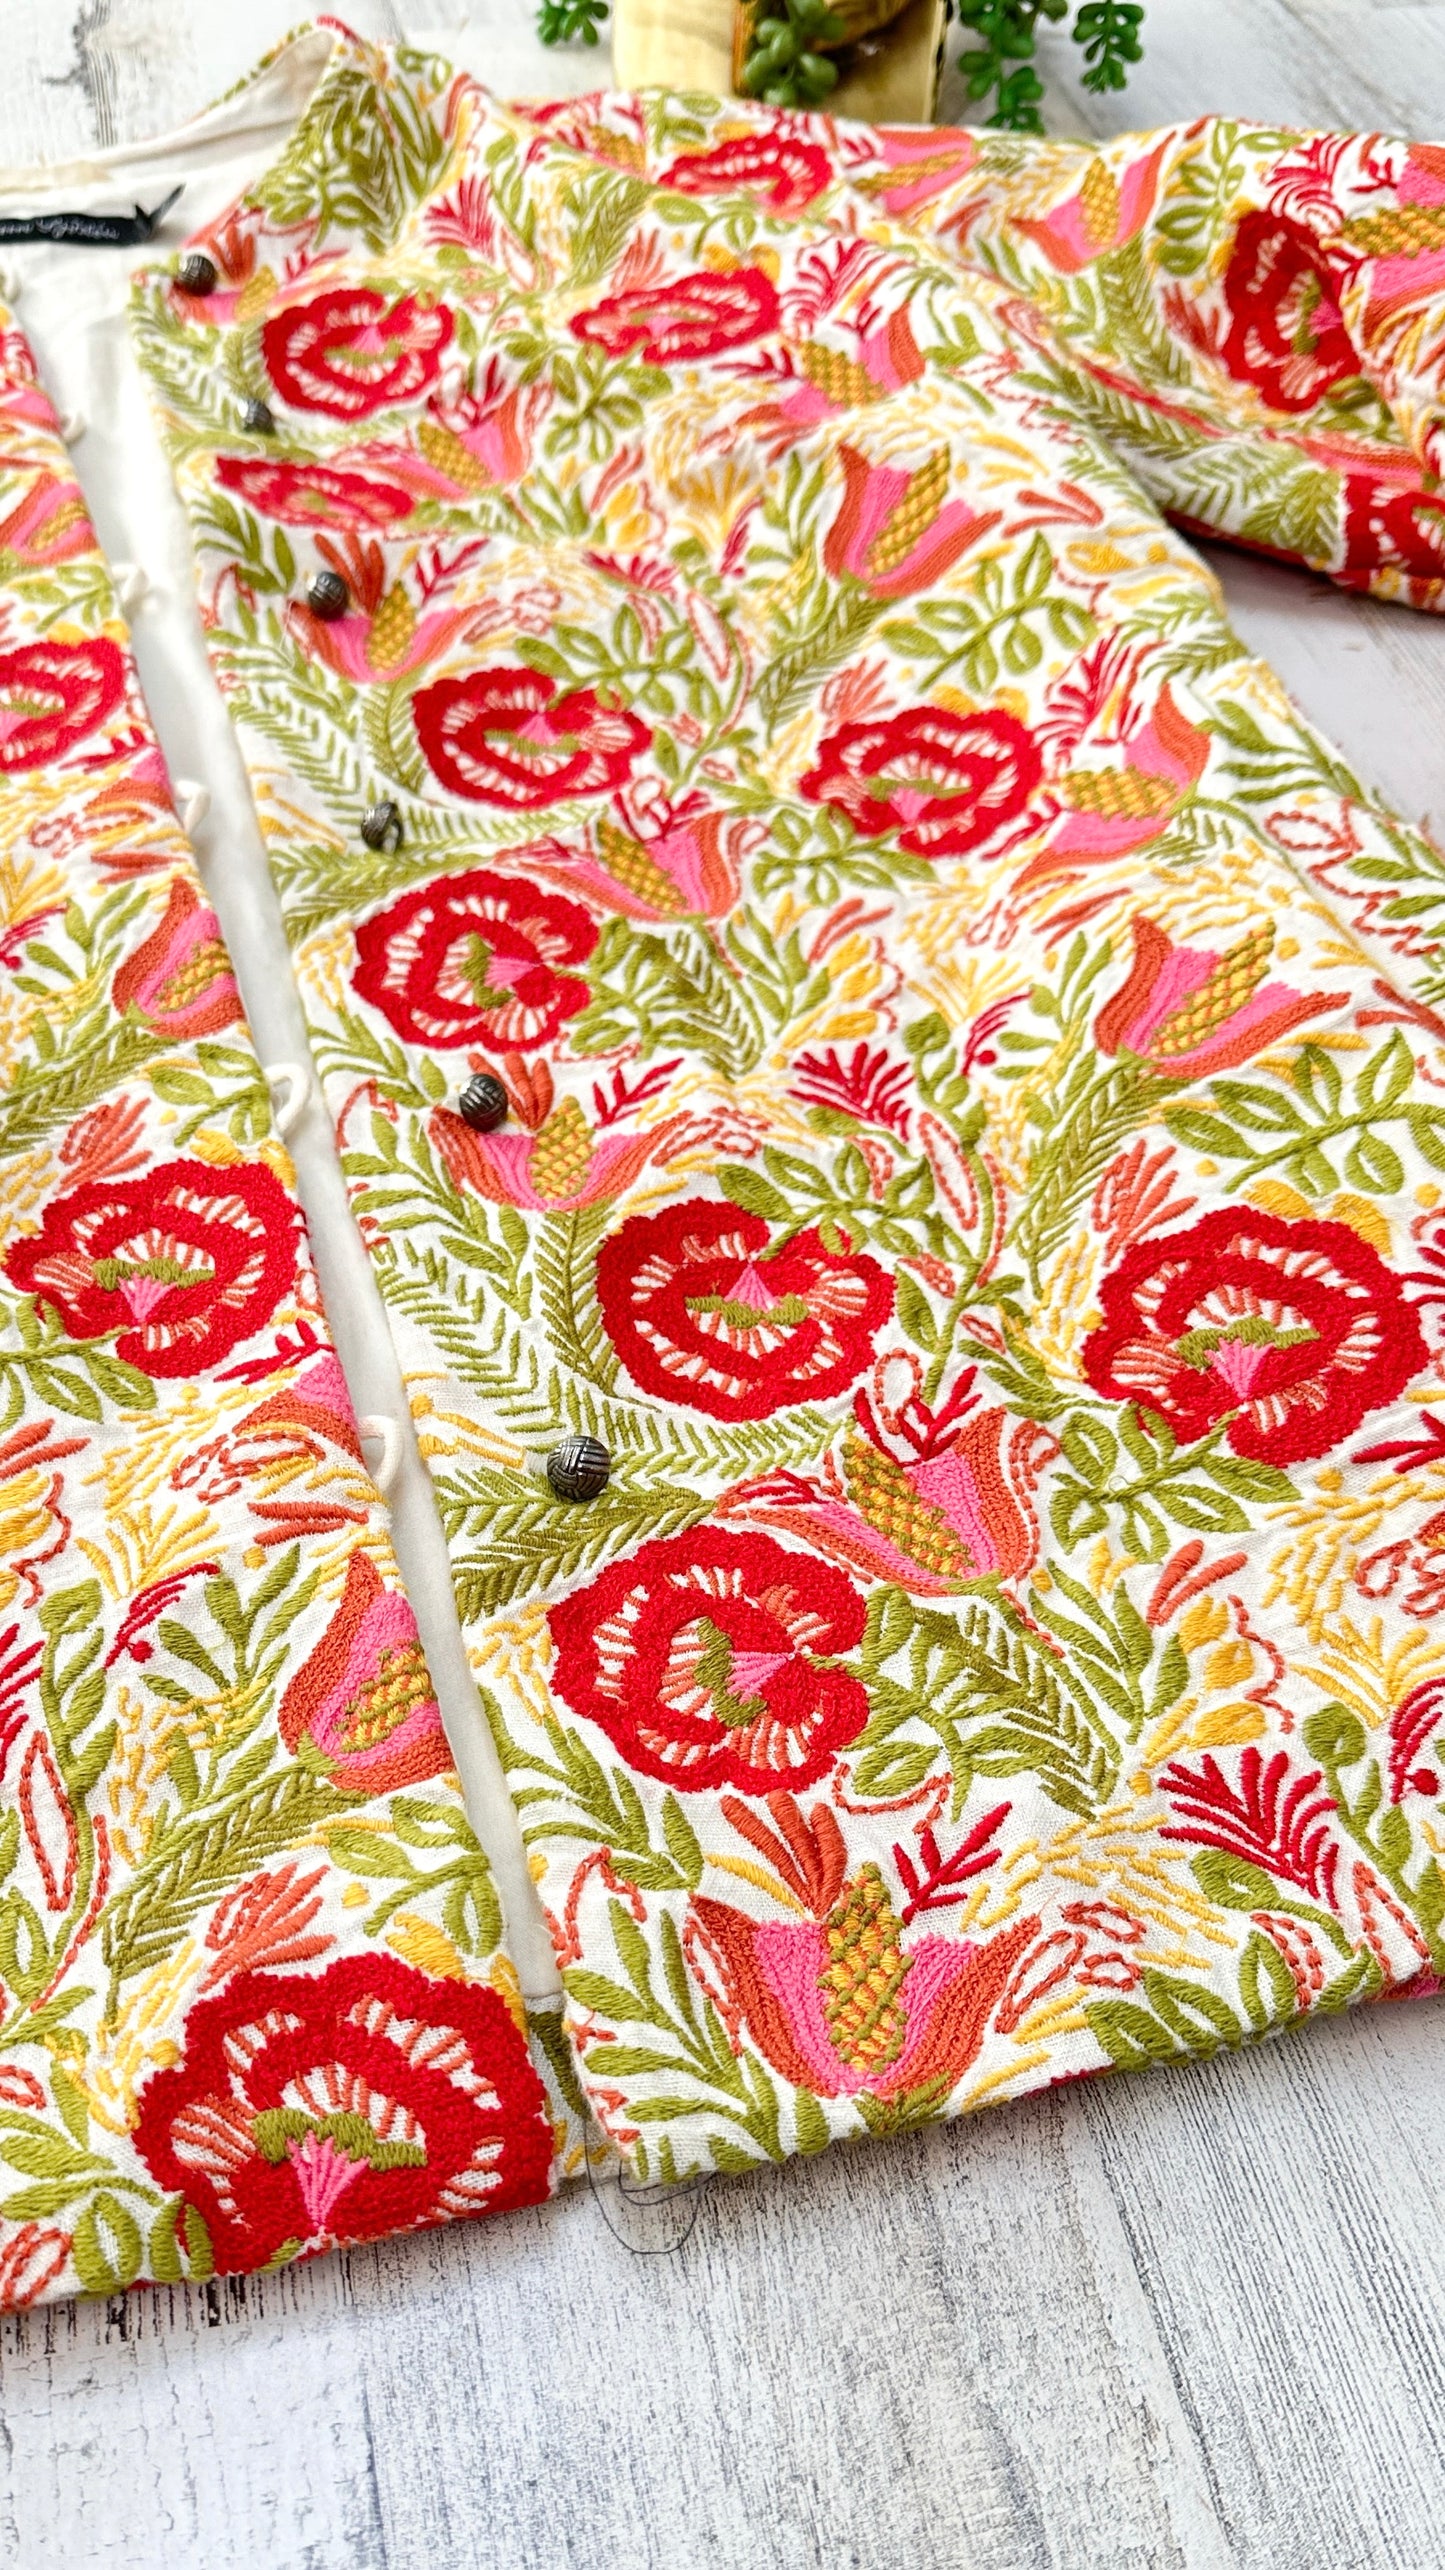 Gudrun Sjödén Spring Floral Embroidered Jacket (S/M)